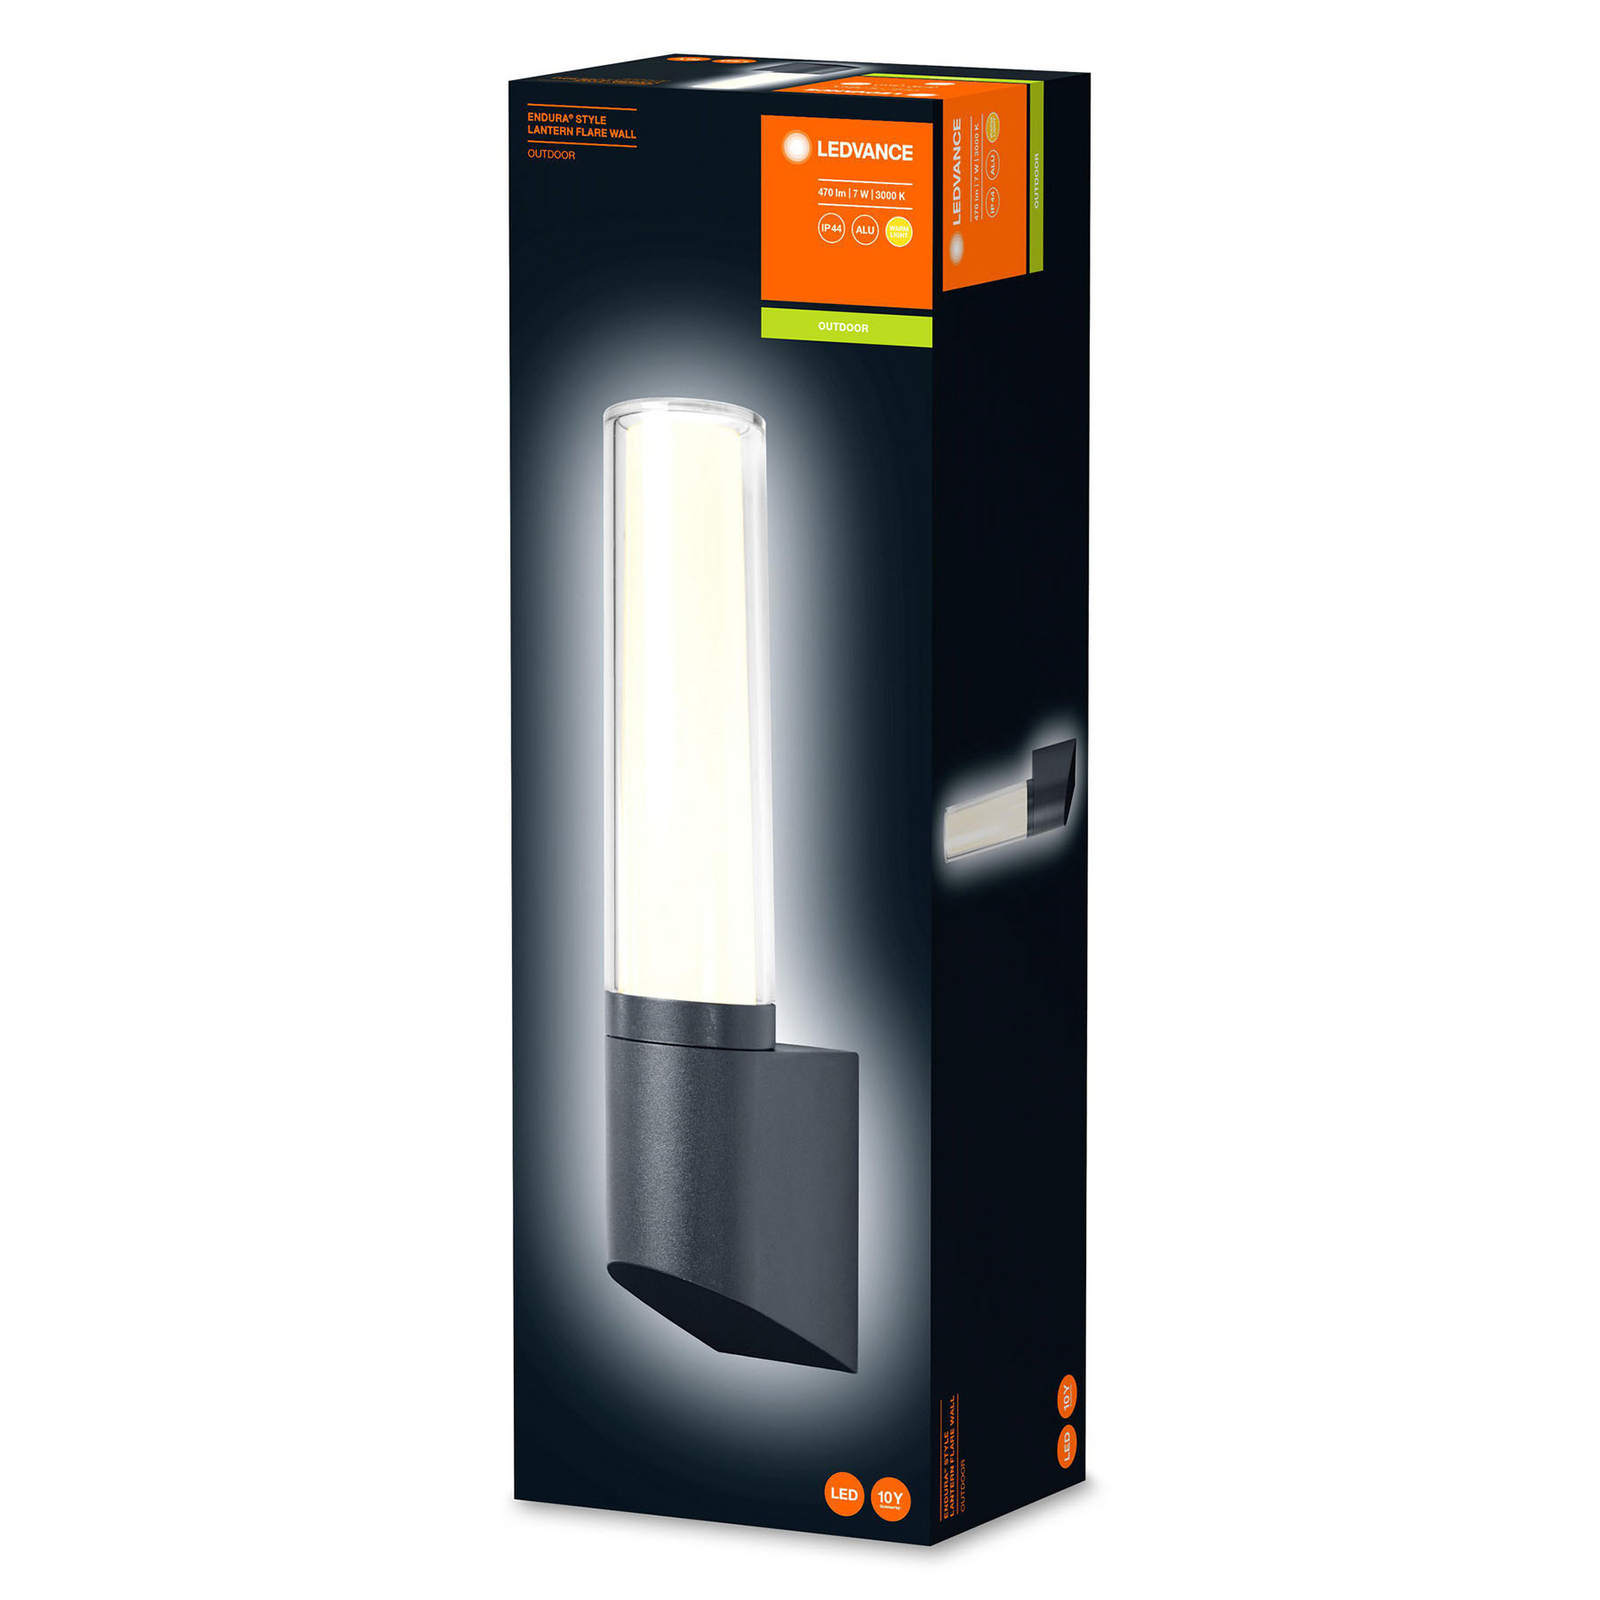 Ledvance Endura Style Flare LED kültéri fali lámpa